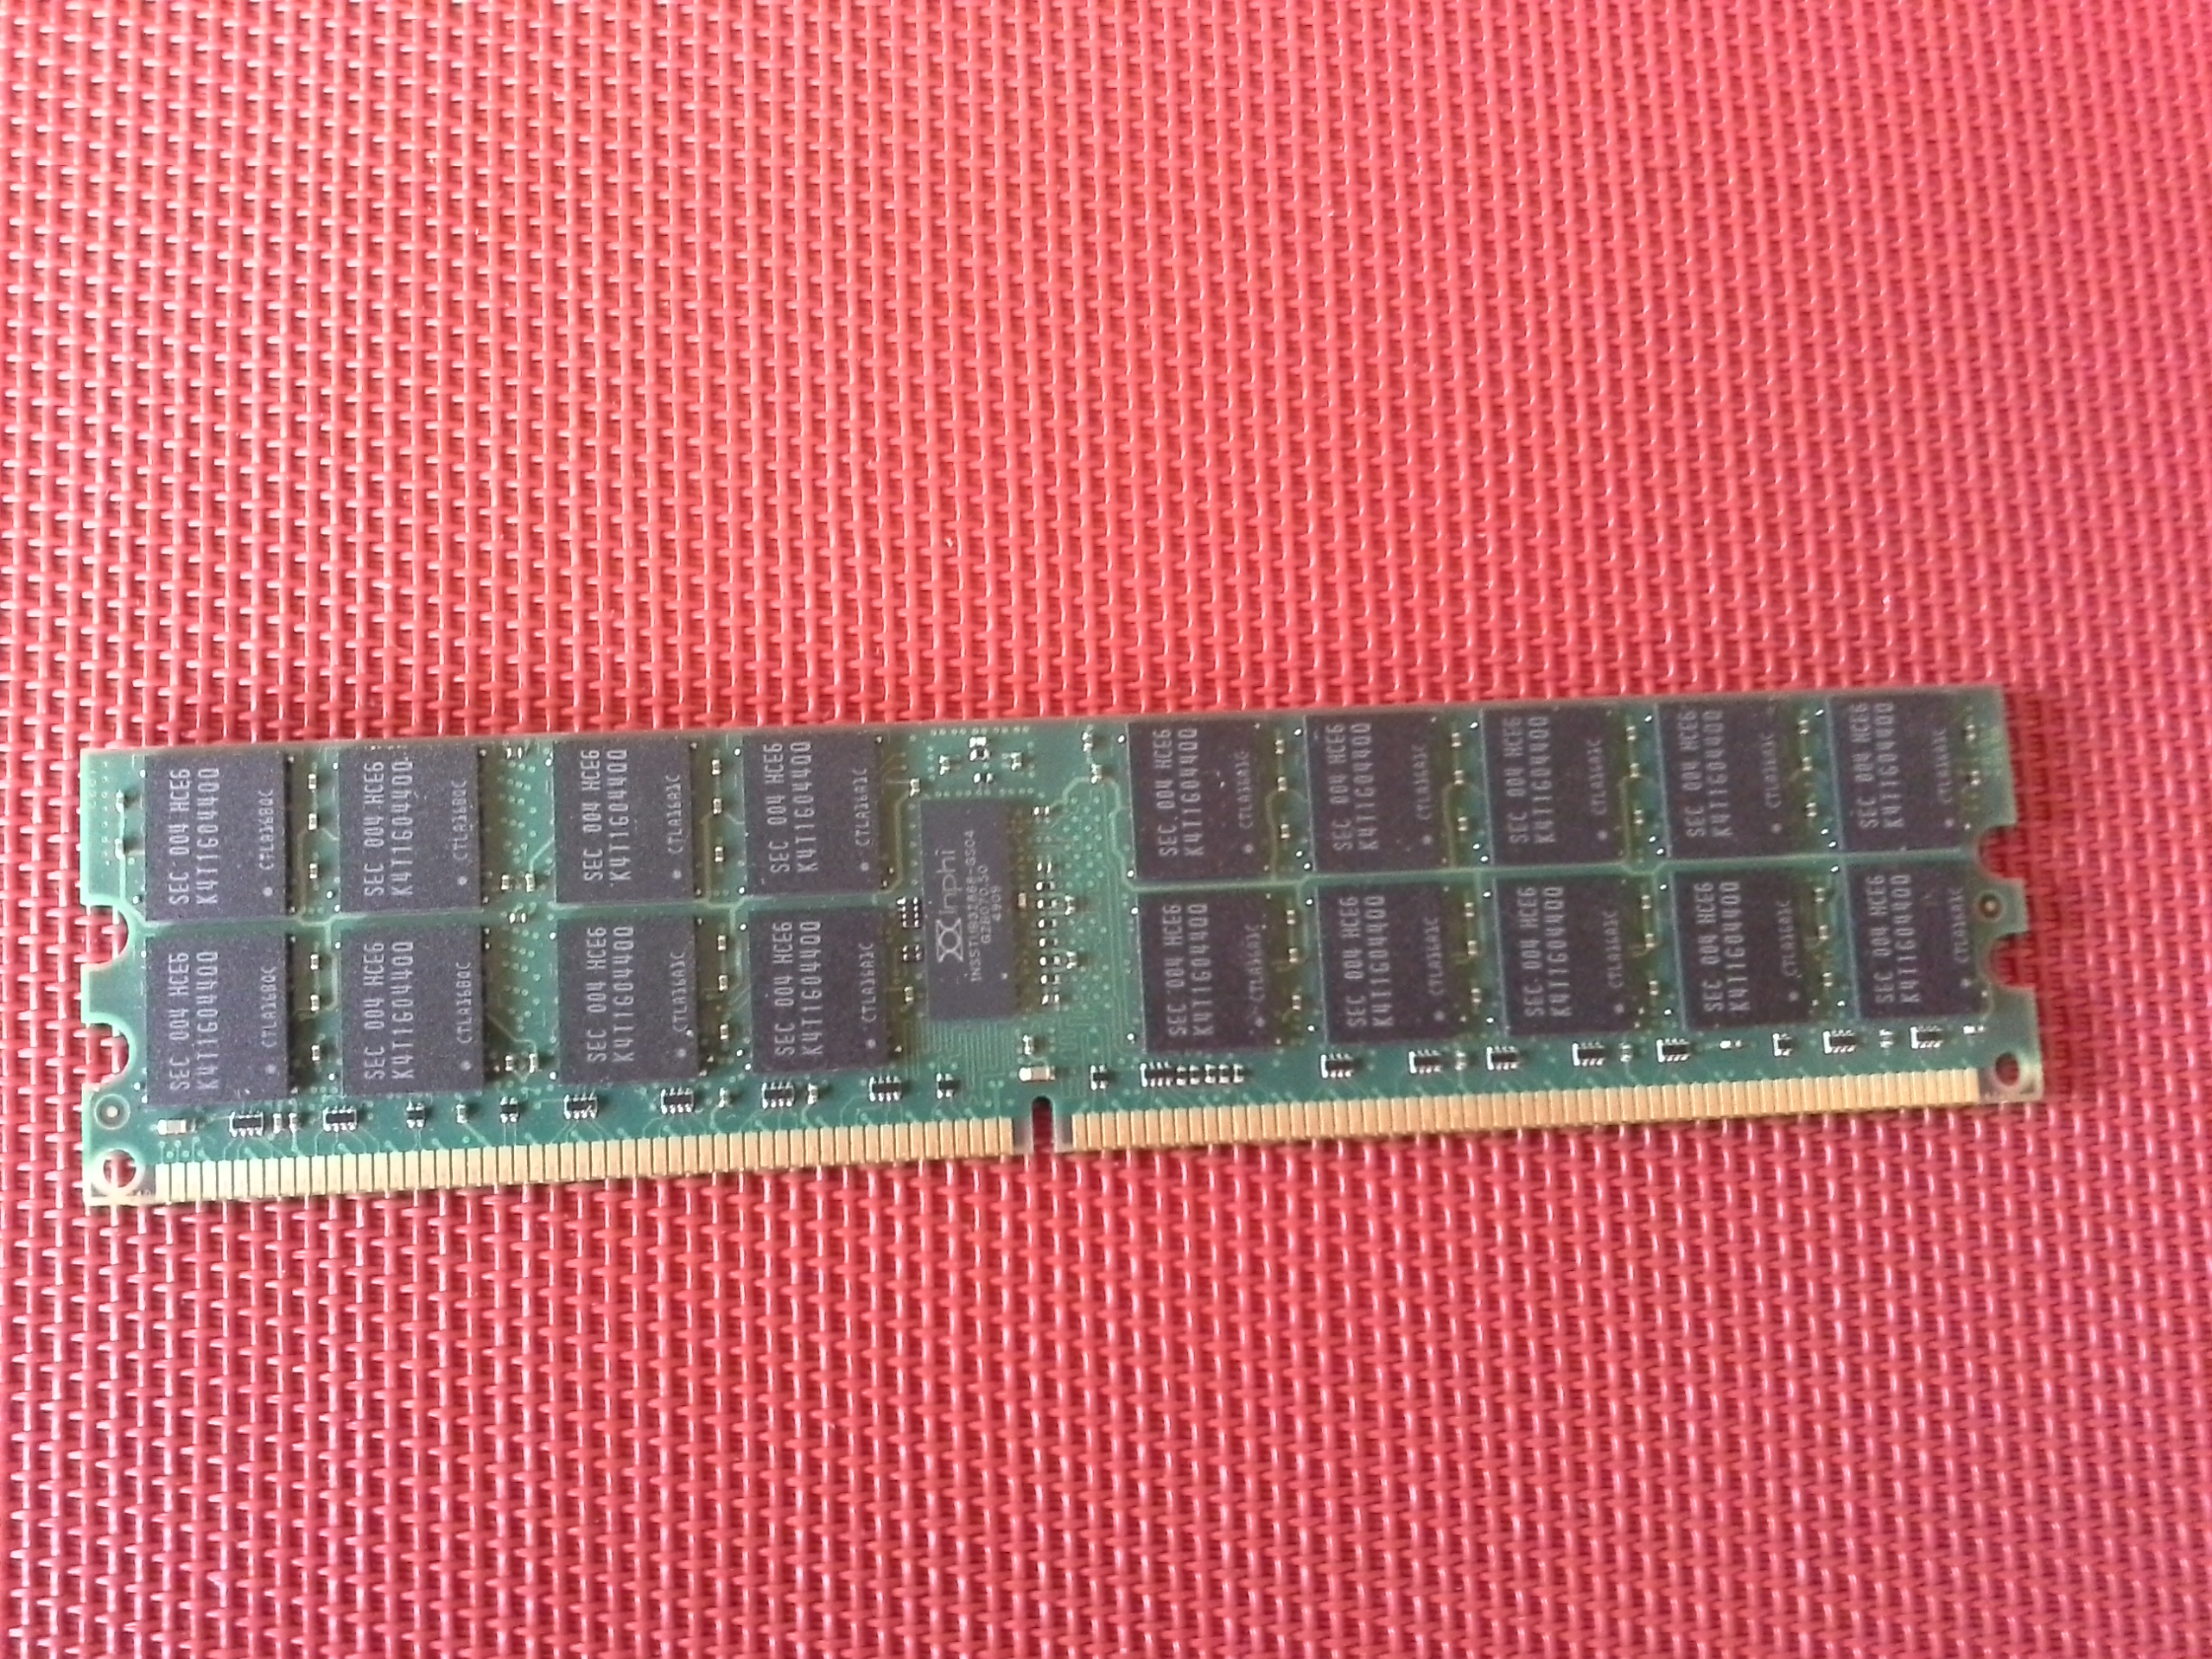 Kingston KTH-XW8200 / 4G-4GB DDR2 SDRAM Speicher-Modul